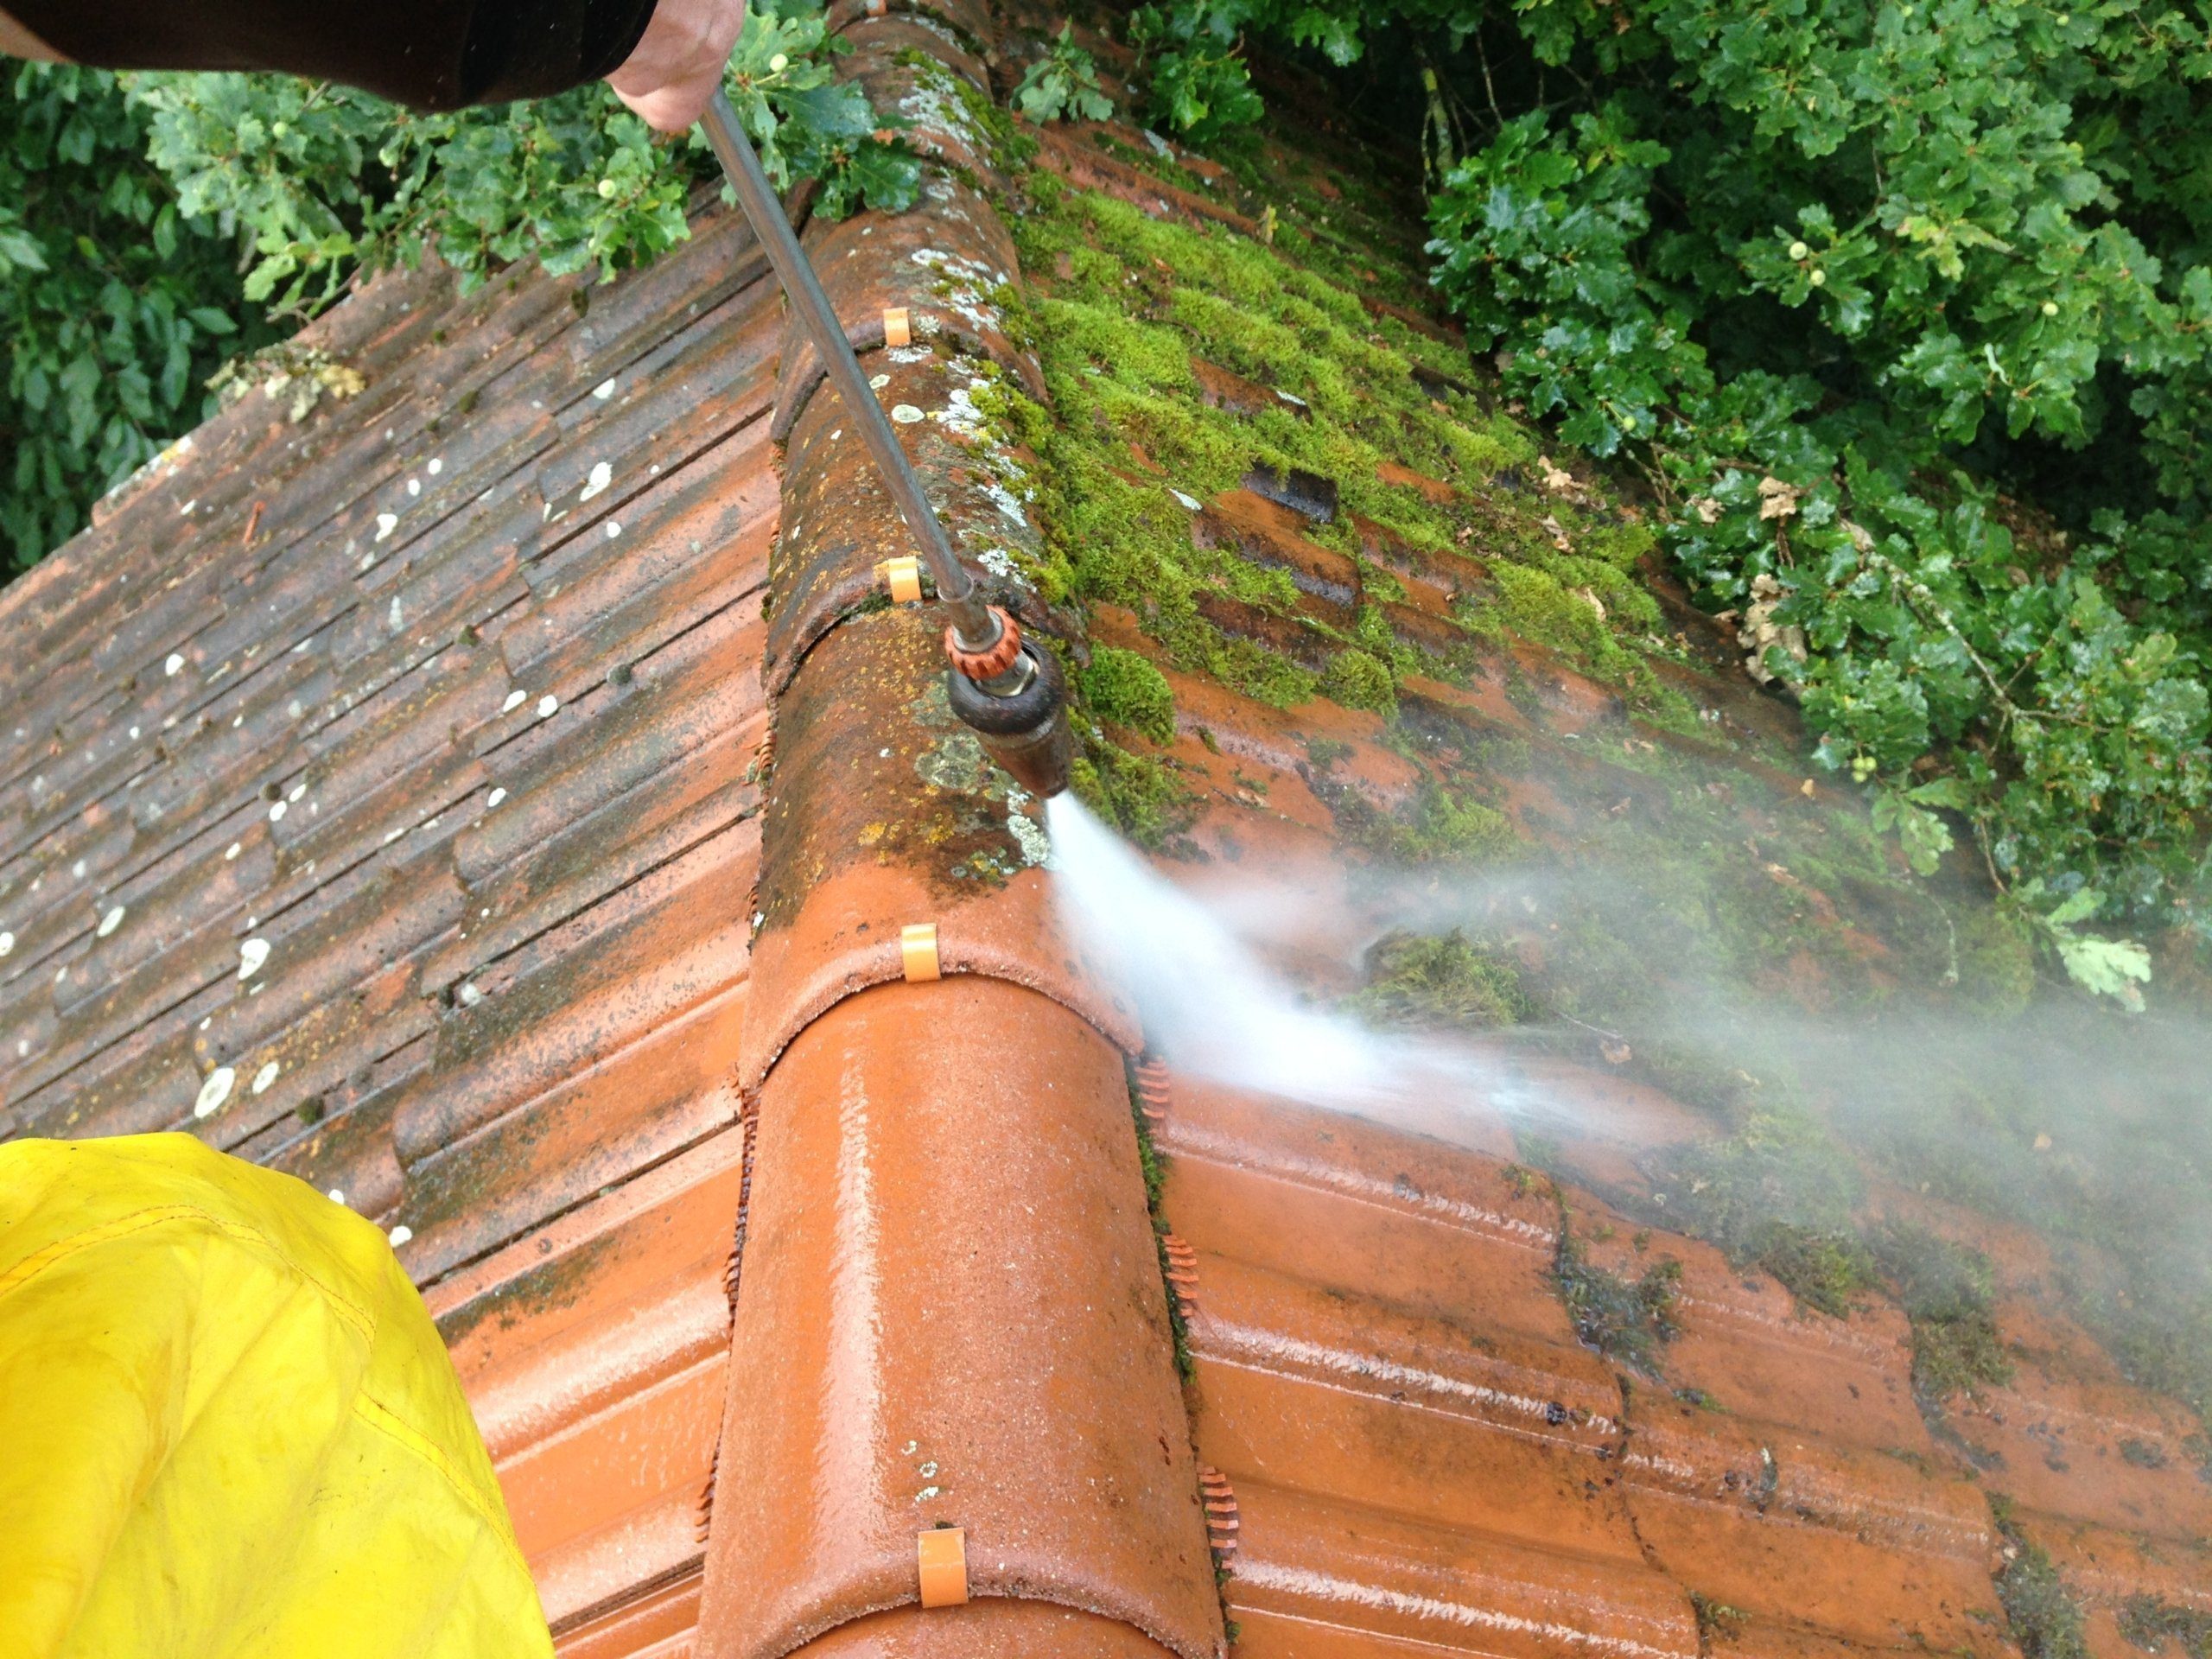 Dachreinigung mit Dachbeschichtung 4 moos vom dach entfernen scaled